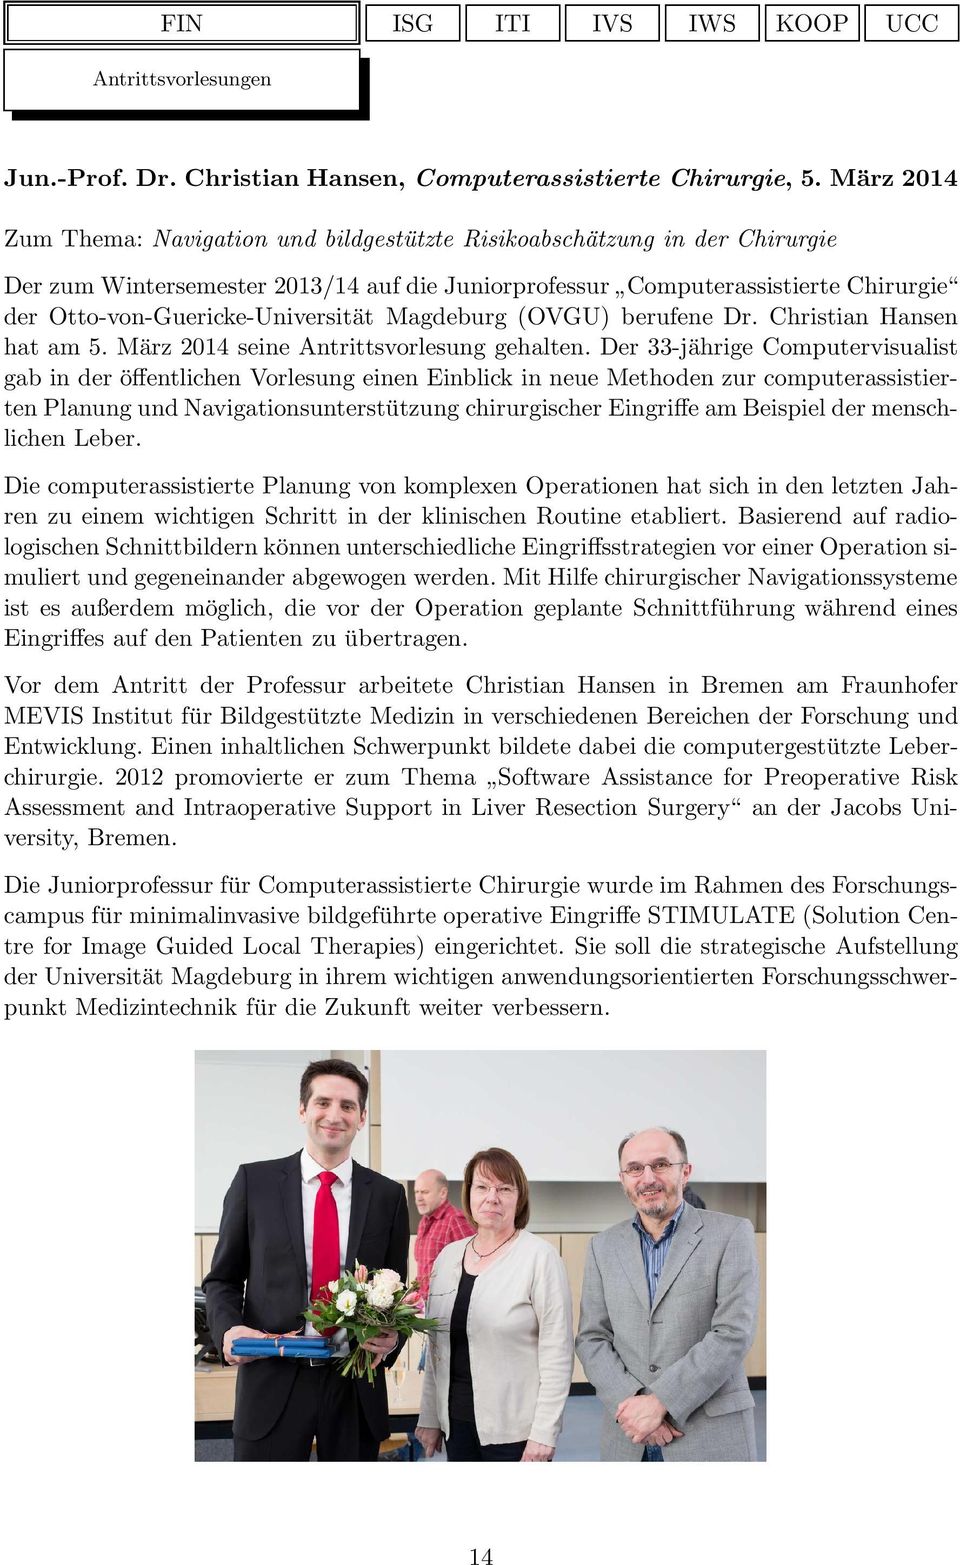 Otto-von-Guericke-Universität Magdeburg (OVGU) berufene Dr. Christian Hansen hat am 5. März 2014 seine Antrittsvorlesung gehalten.